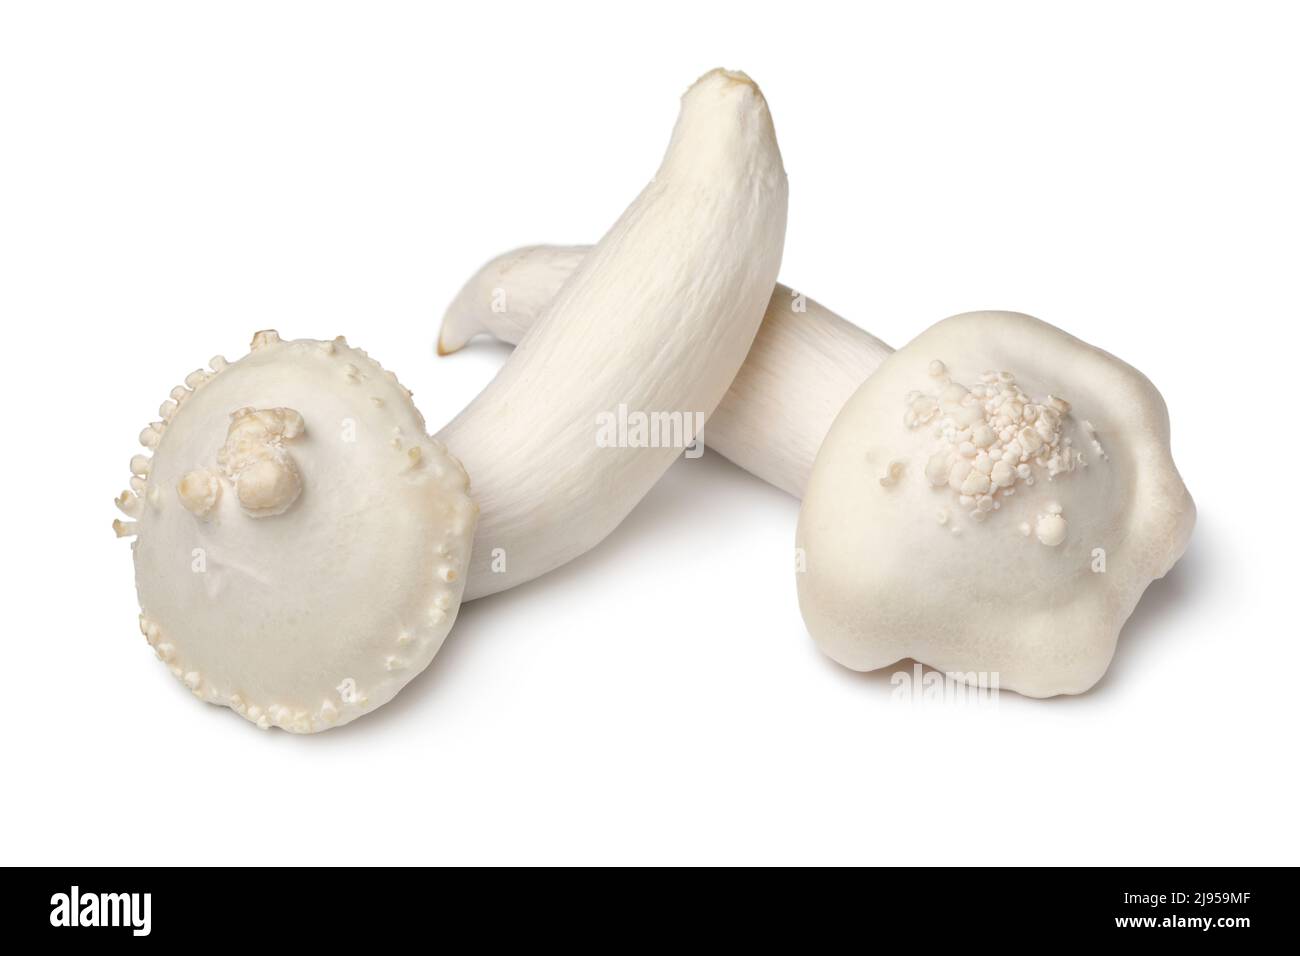 Coppia di funghi shimeji freschi deformati isolati su sfondo bianco da vicino Foto Stock